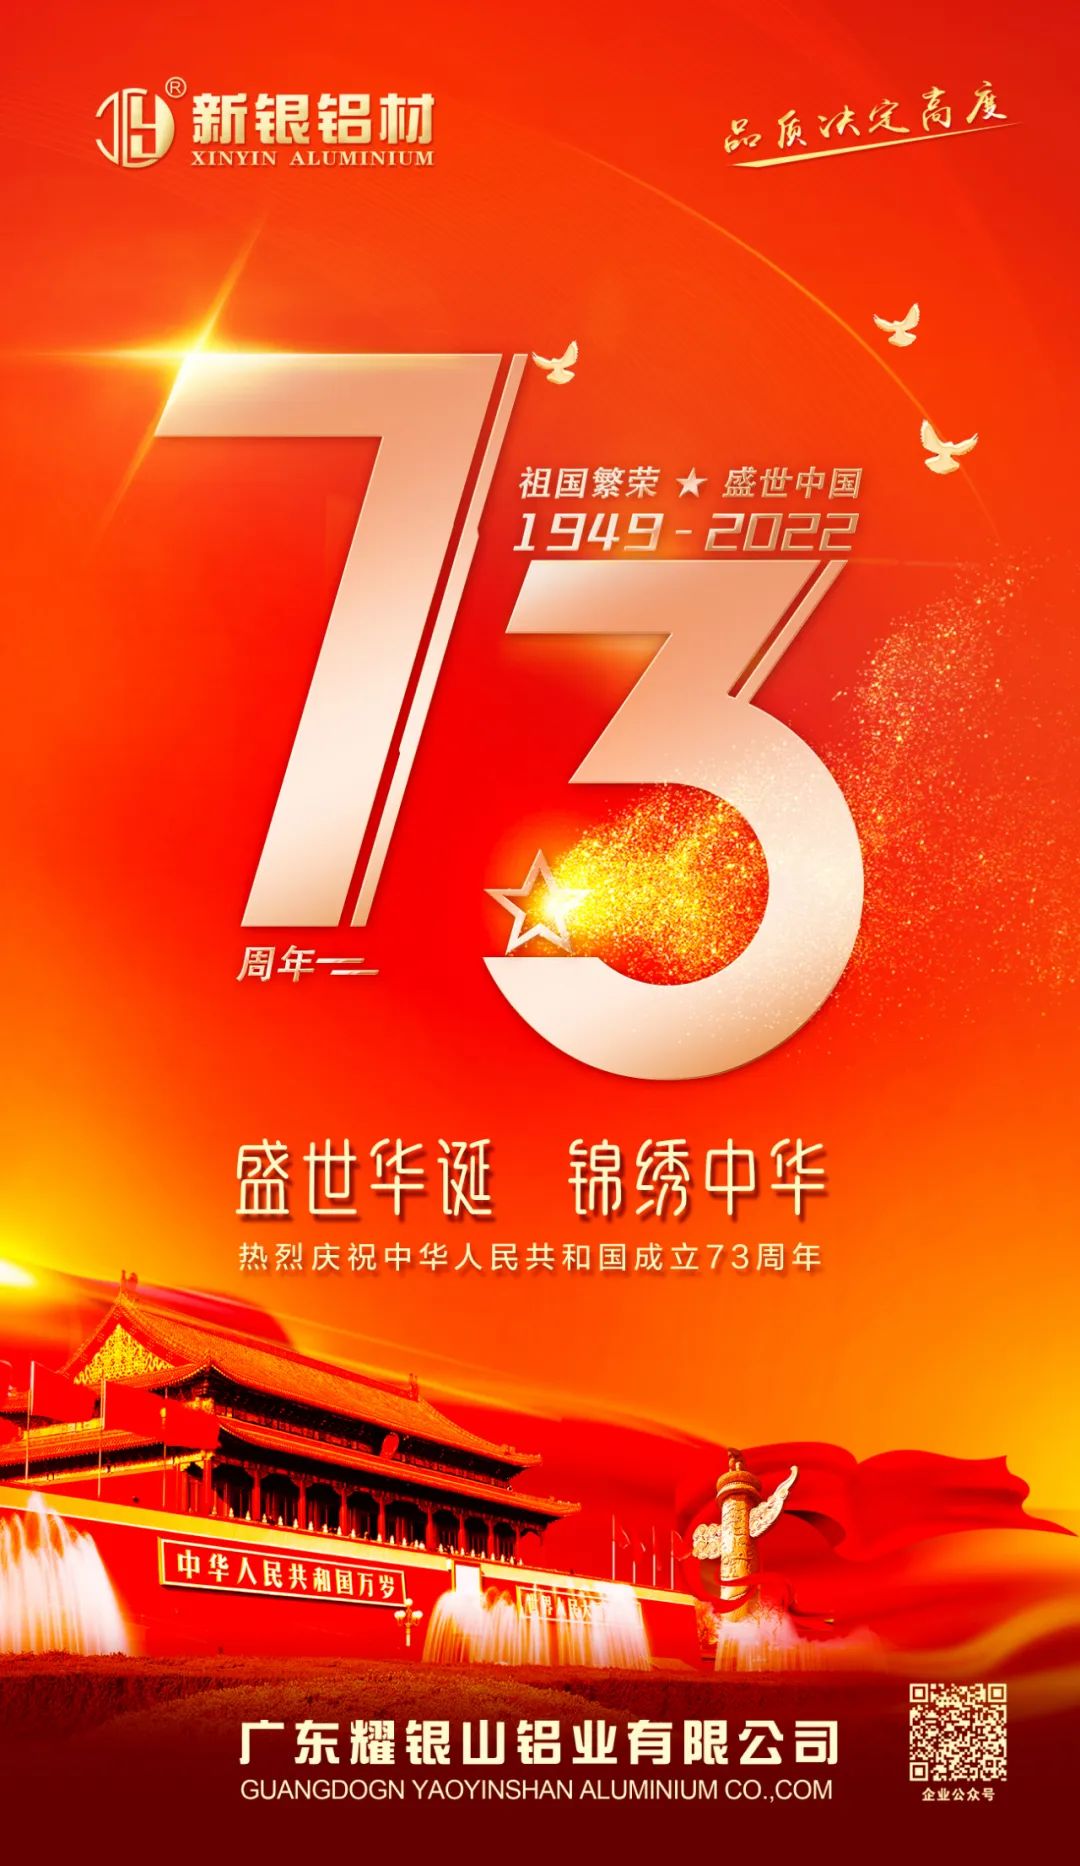 【新银铝材】盛世中国、喜迎华诞——热烈庆祝中华人民共和国成立73周年